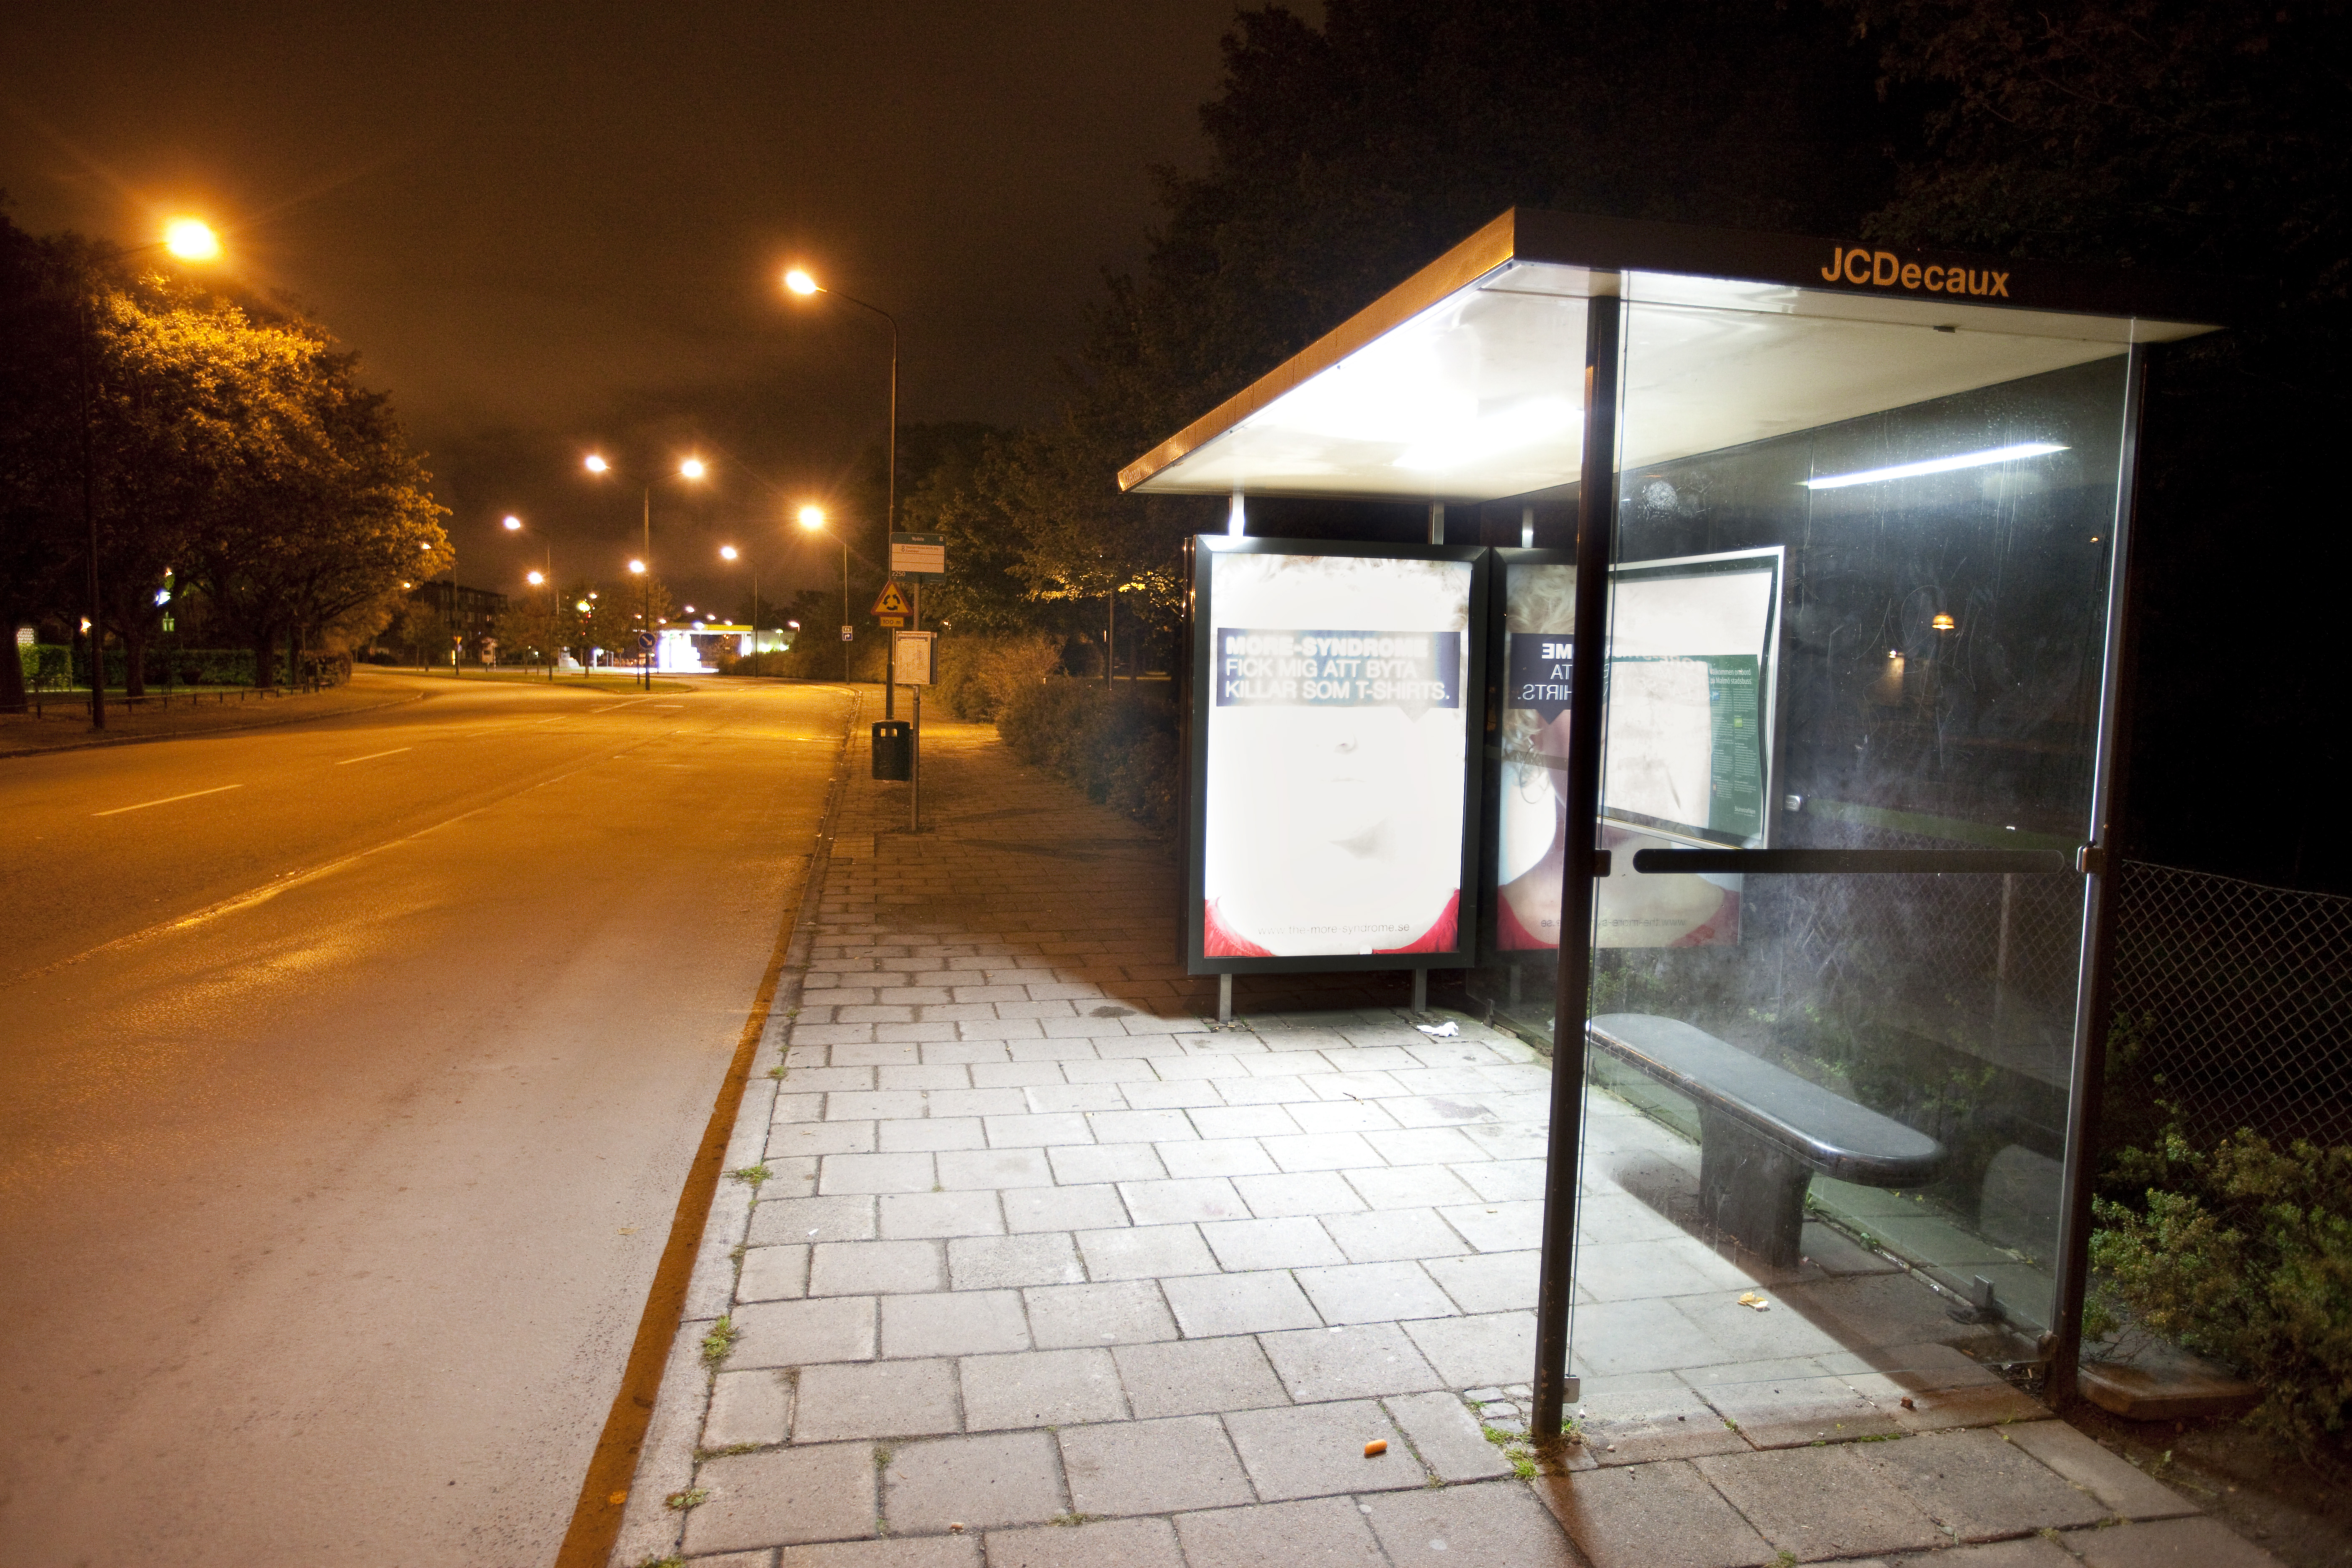 Vid denna busshållplatsen på Eriksfältsgatan i Malmö blev en man skjuten vid 20-tiden på tisdagskvällen. Inom loppet av ett par timmar sköts tre personer i Malmö. Alla uppges vara allvarligt skadade.